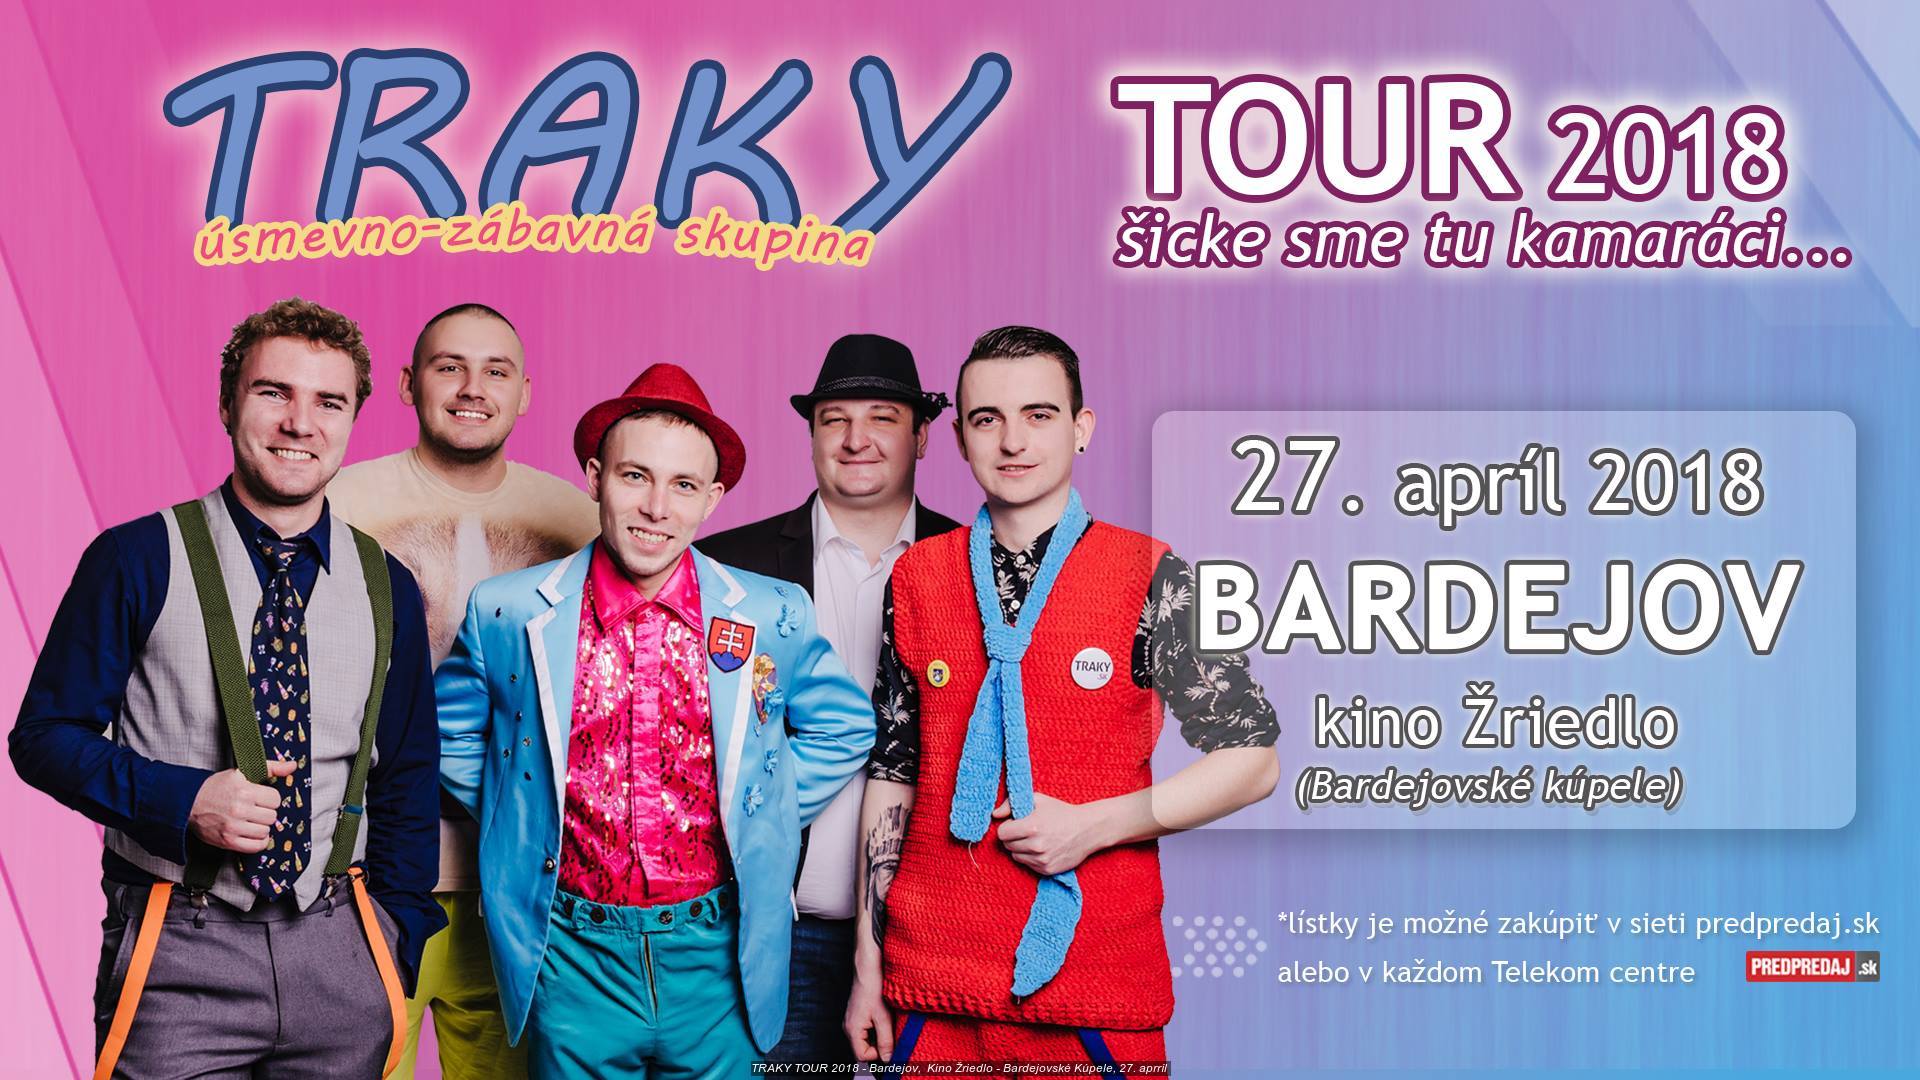 TRAKY TOUR 2018 - Bardejov,  Kino Žriedlo - Bardejovské Kúpele, 27. aprríl